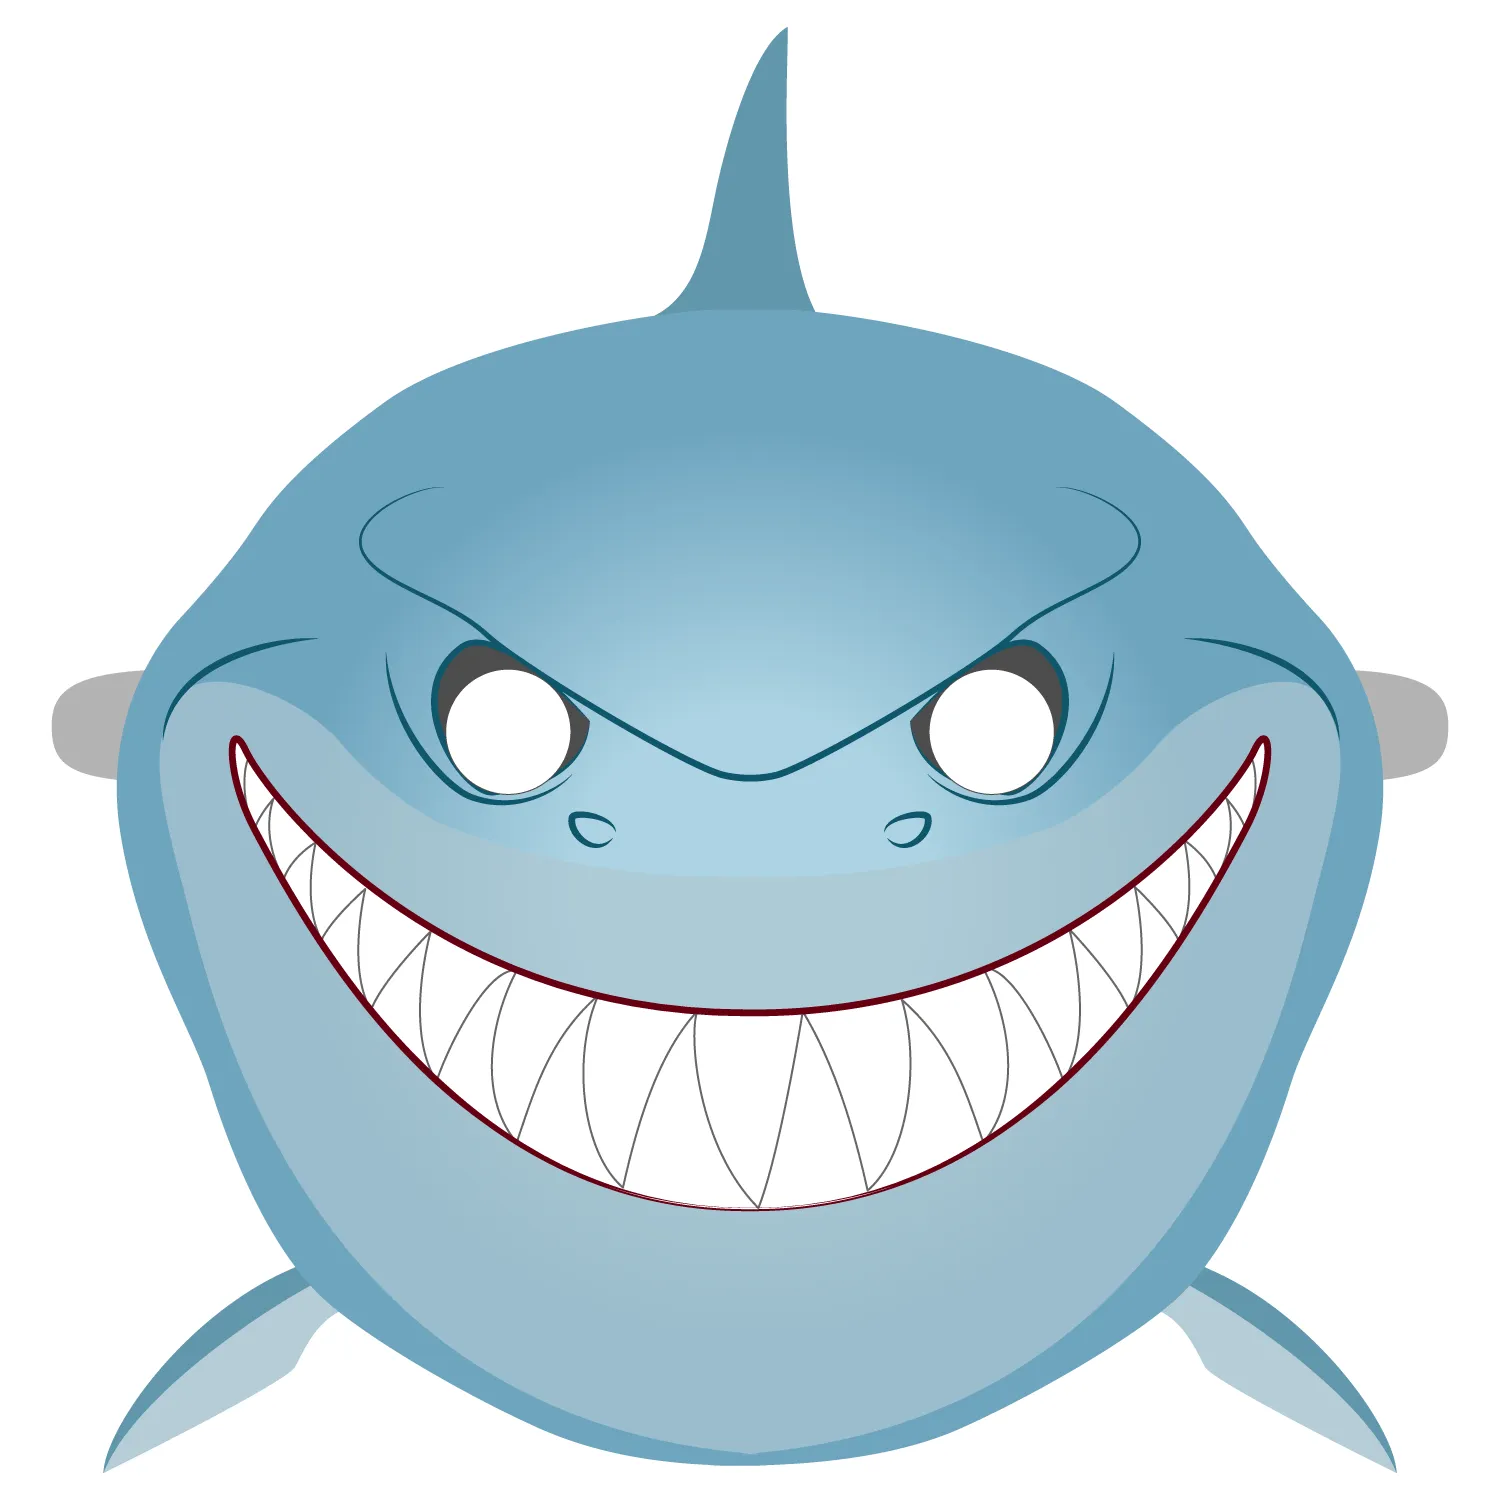 Plantilla de Máscara de Tiburón | Manualidades de papel para niños